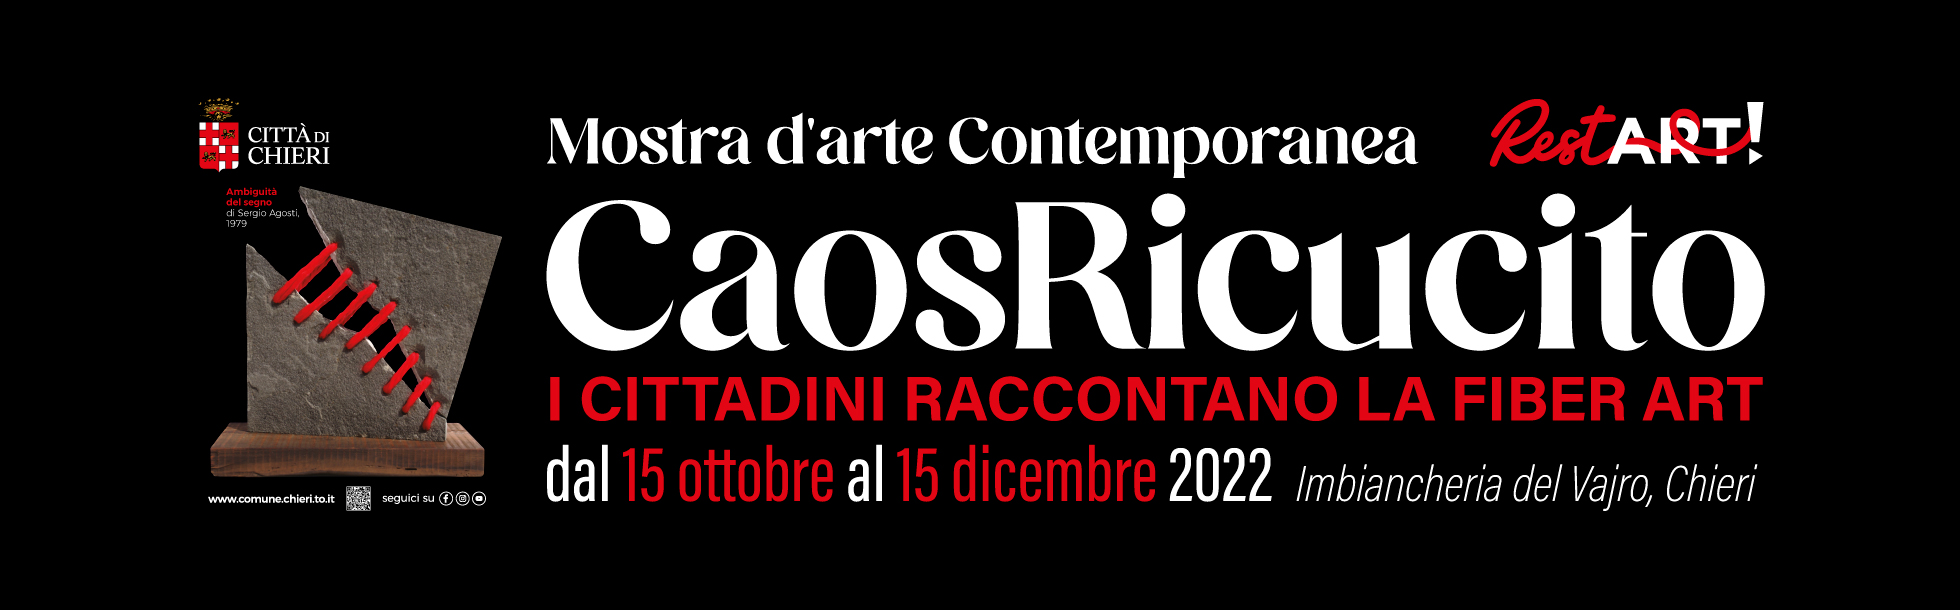 Banner ufficiale della mostra d'arte contemporanea, Il Caos Ricucito